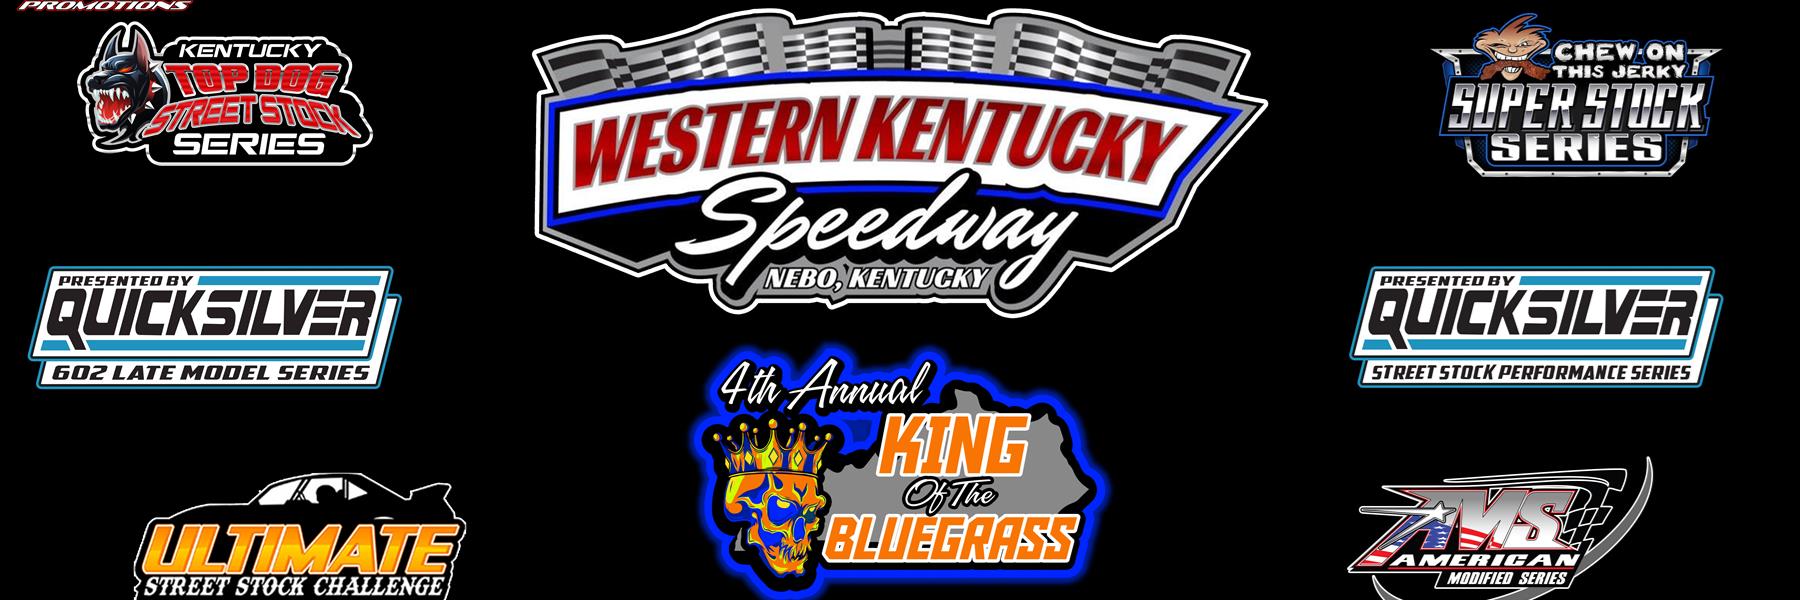 10/1/2022 - Western Kentucky Speedway